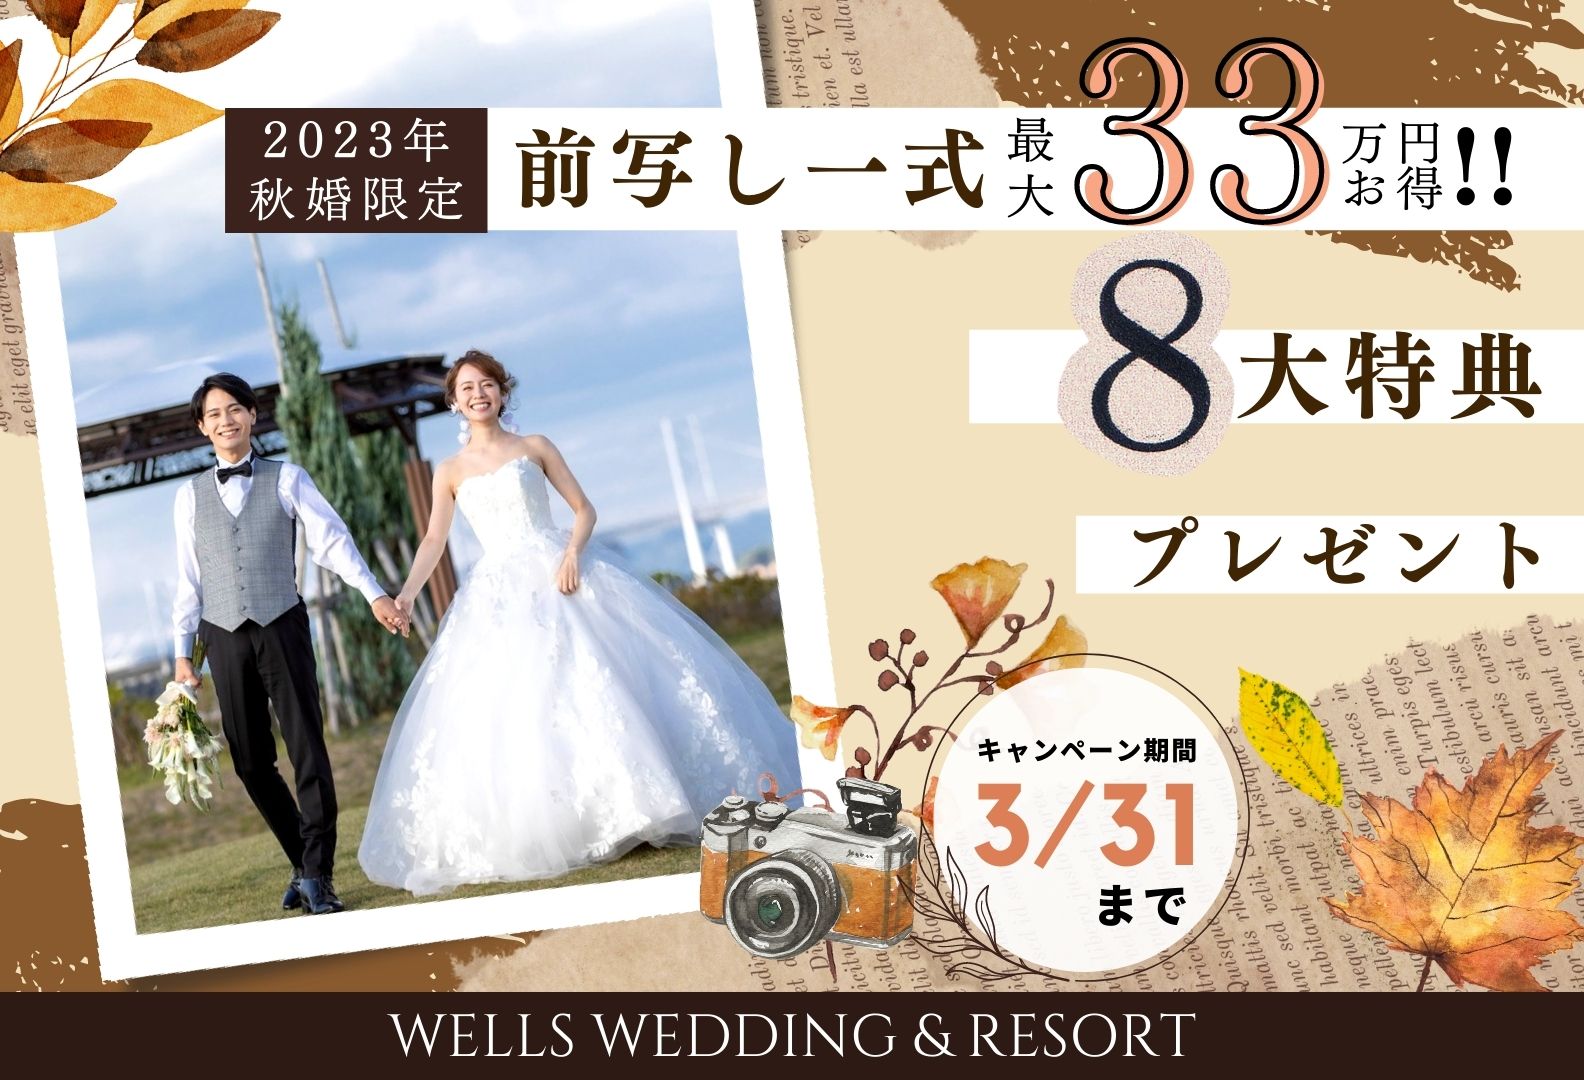 香川県で人気の結婚式場のシェルエメールの秋婚プラン